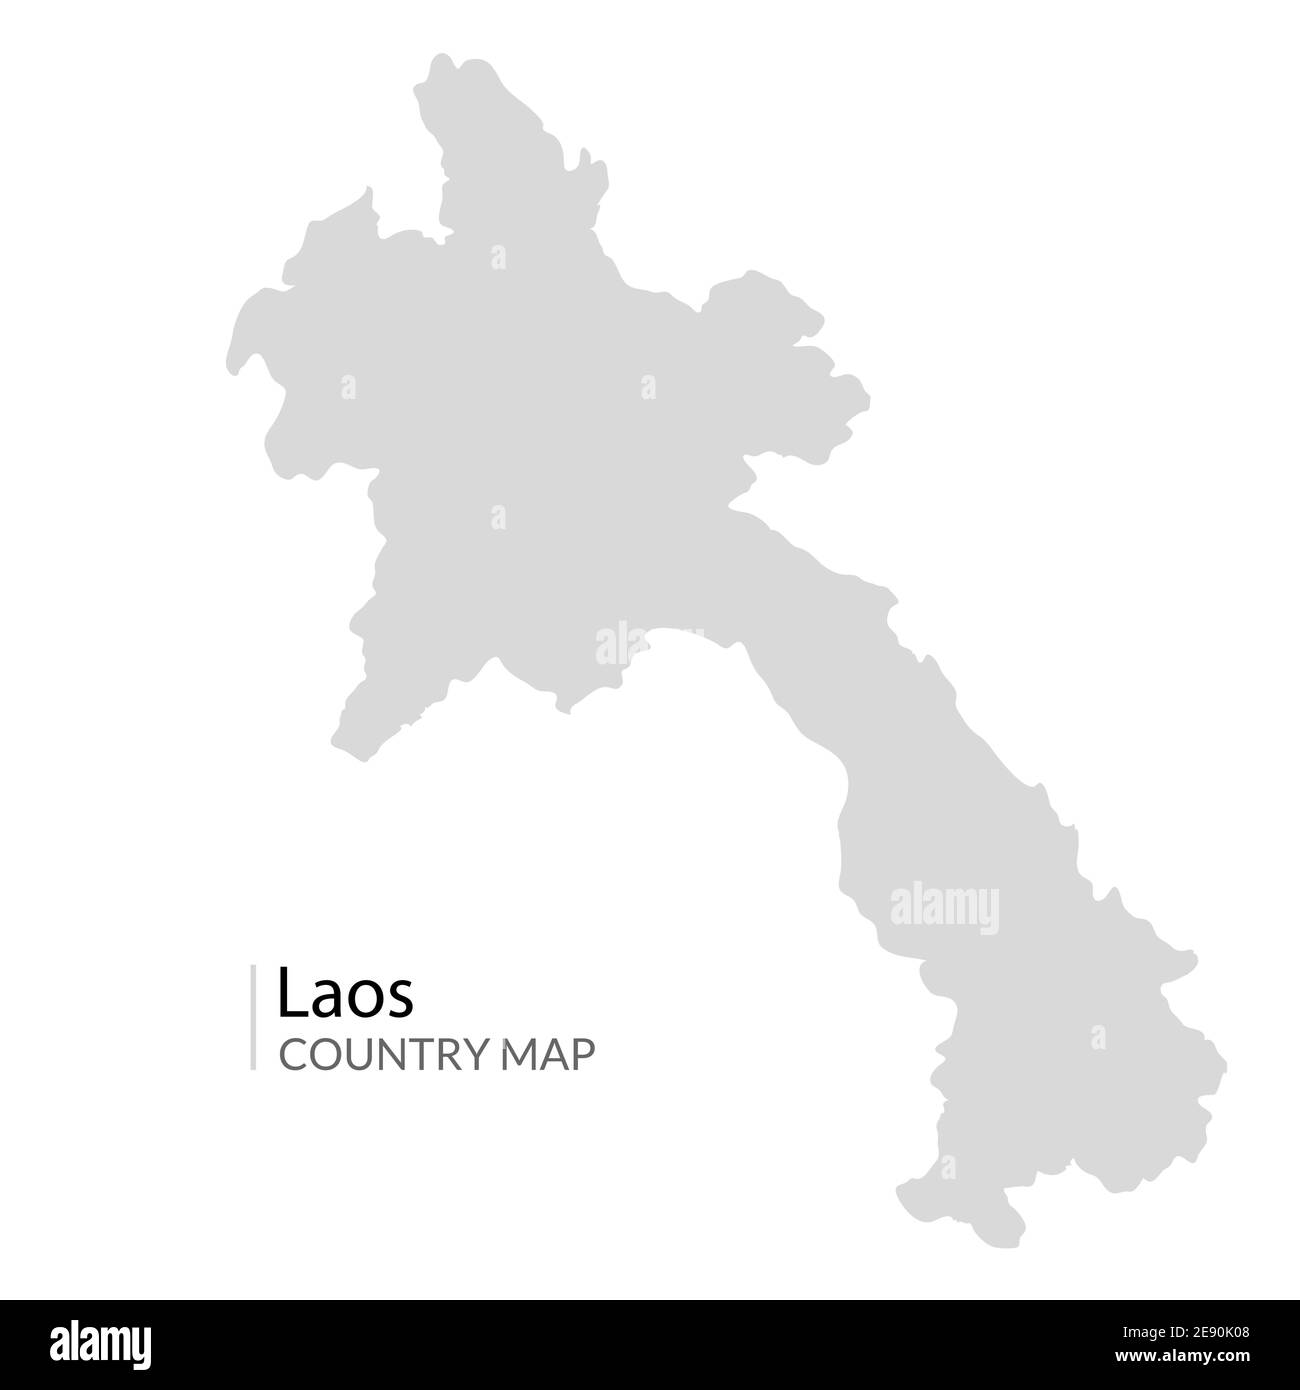 Paese mappa vettoriale Laos. Laos vicino vietnam lao asia mappa regione Illustrazione Vettoriale